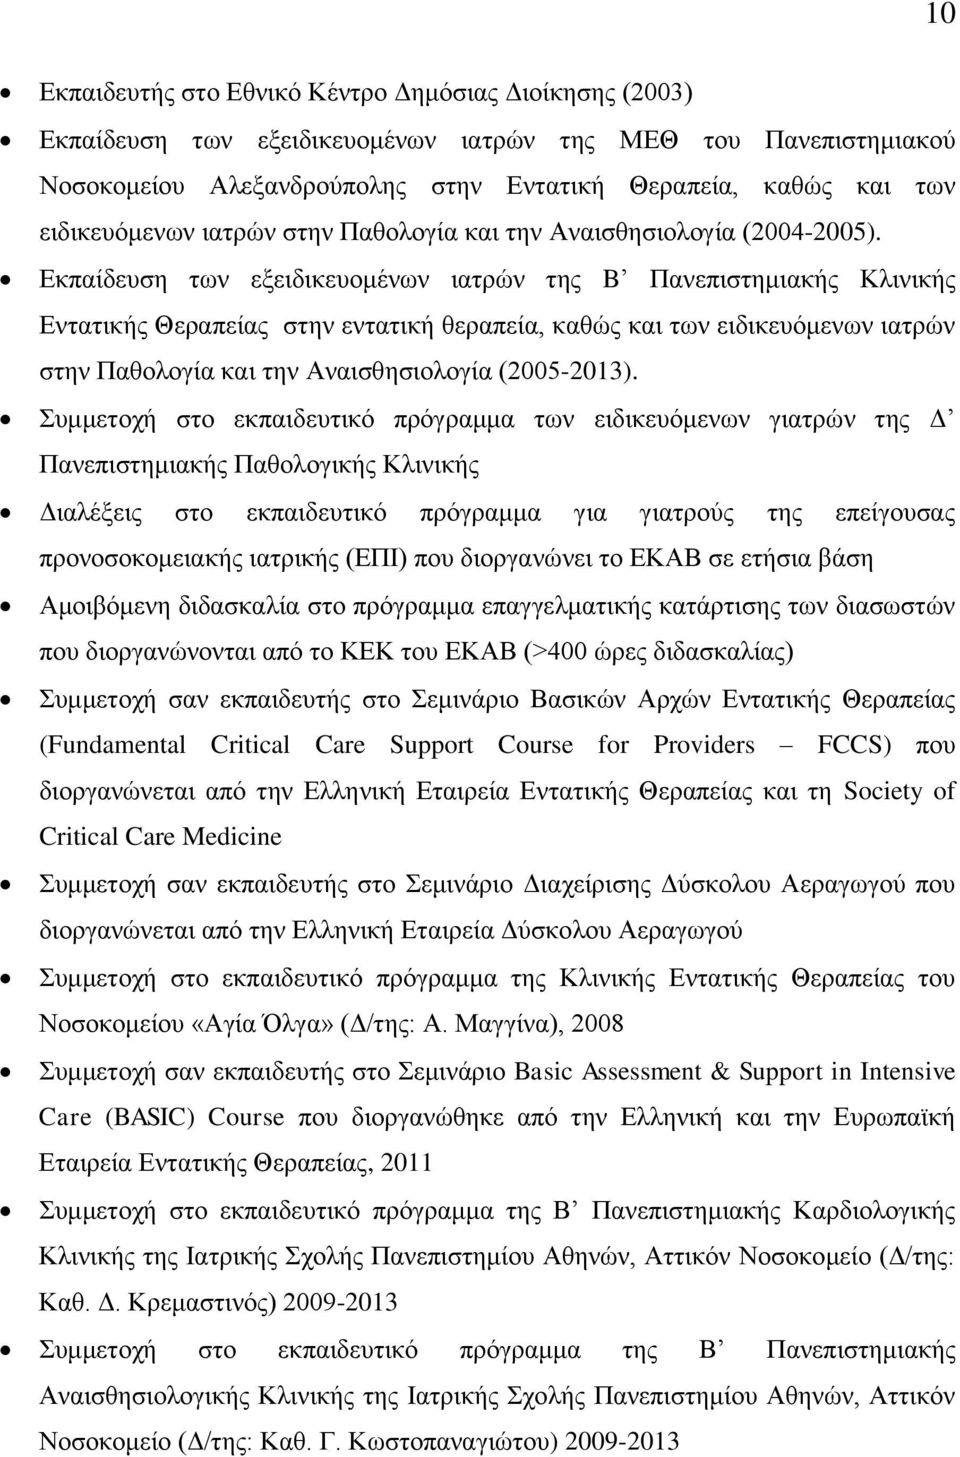 Εκπαίδευση των εξειδικευομένων ιατρών της B Πανεπιστημιακής Κλινικής Εντατικής Θεραπείας στην εντατική θεραπεία, καθώς και των ειδικευόμενων ιατρών στην Παθολογία και την Αναισθησιολογία (2005-2013).